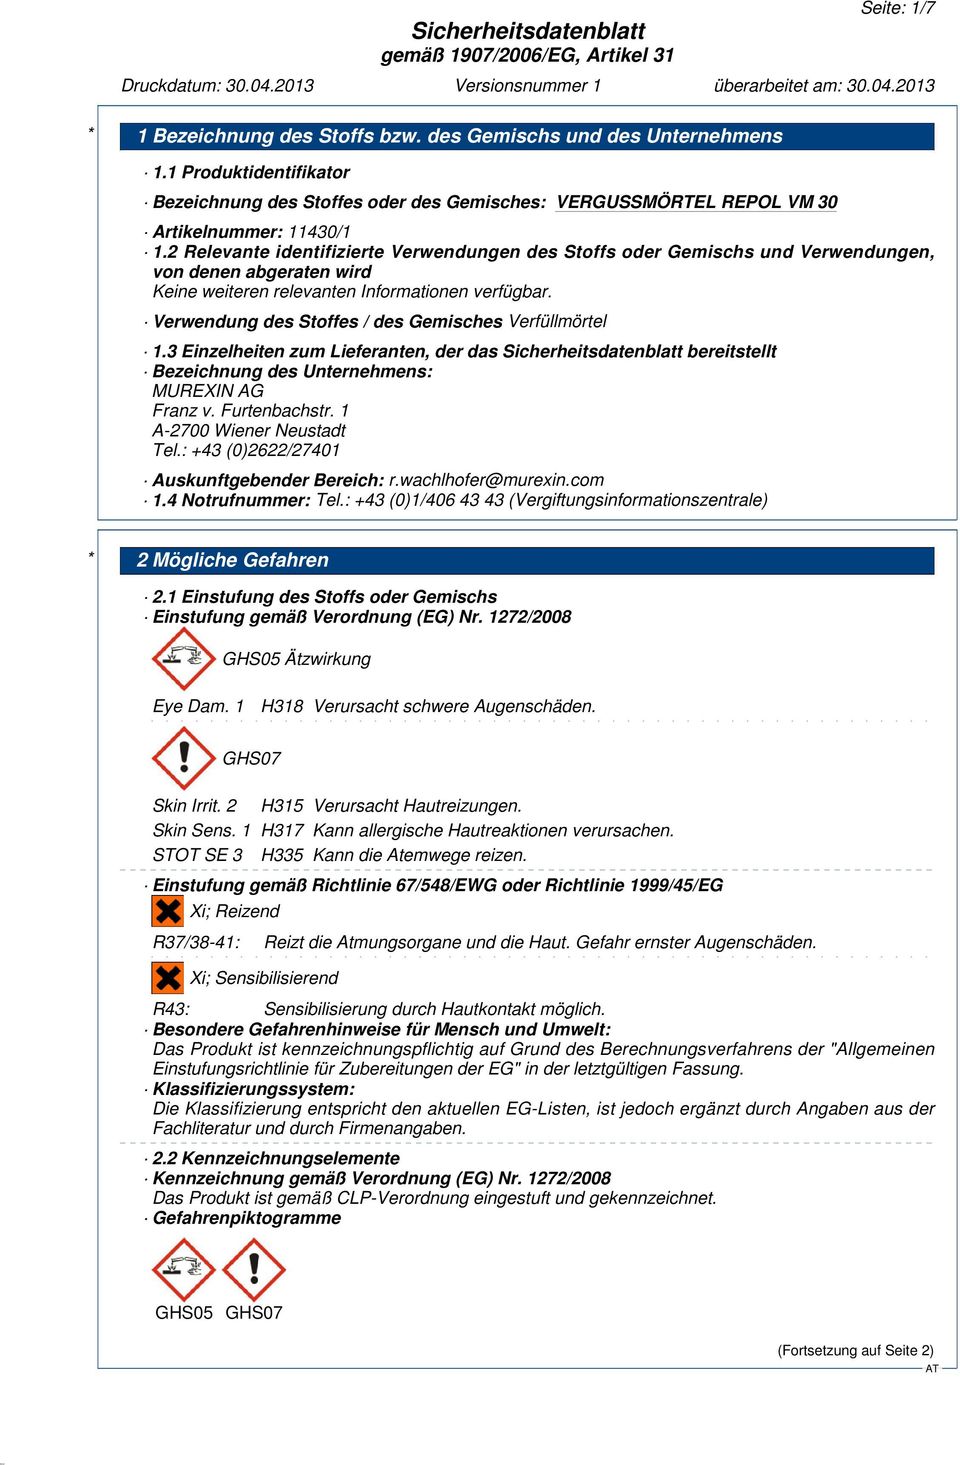 3 Einzelheiten zum Lieferanten, der das bereitstellt Bezeichnung des Unternehmens: MUREXIN AG Franz v. Furtenbachstr. 1 A-2700 Wiener Neustadt Tel.: +43 (0)2622/27401 Auskunftgebender Bereich: r.